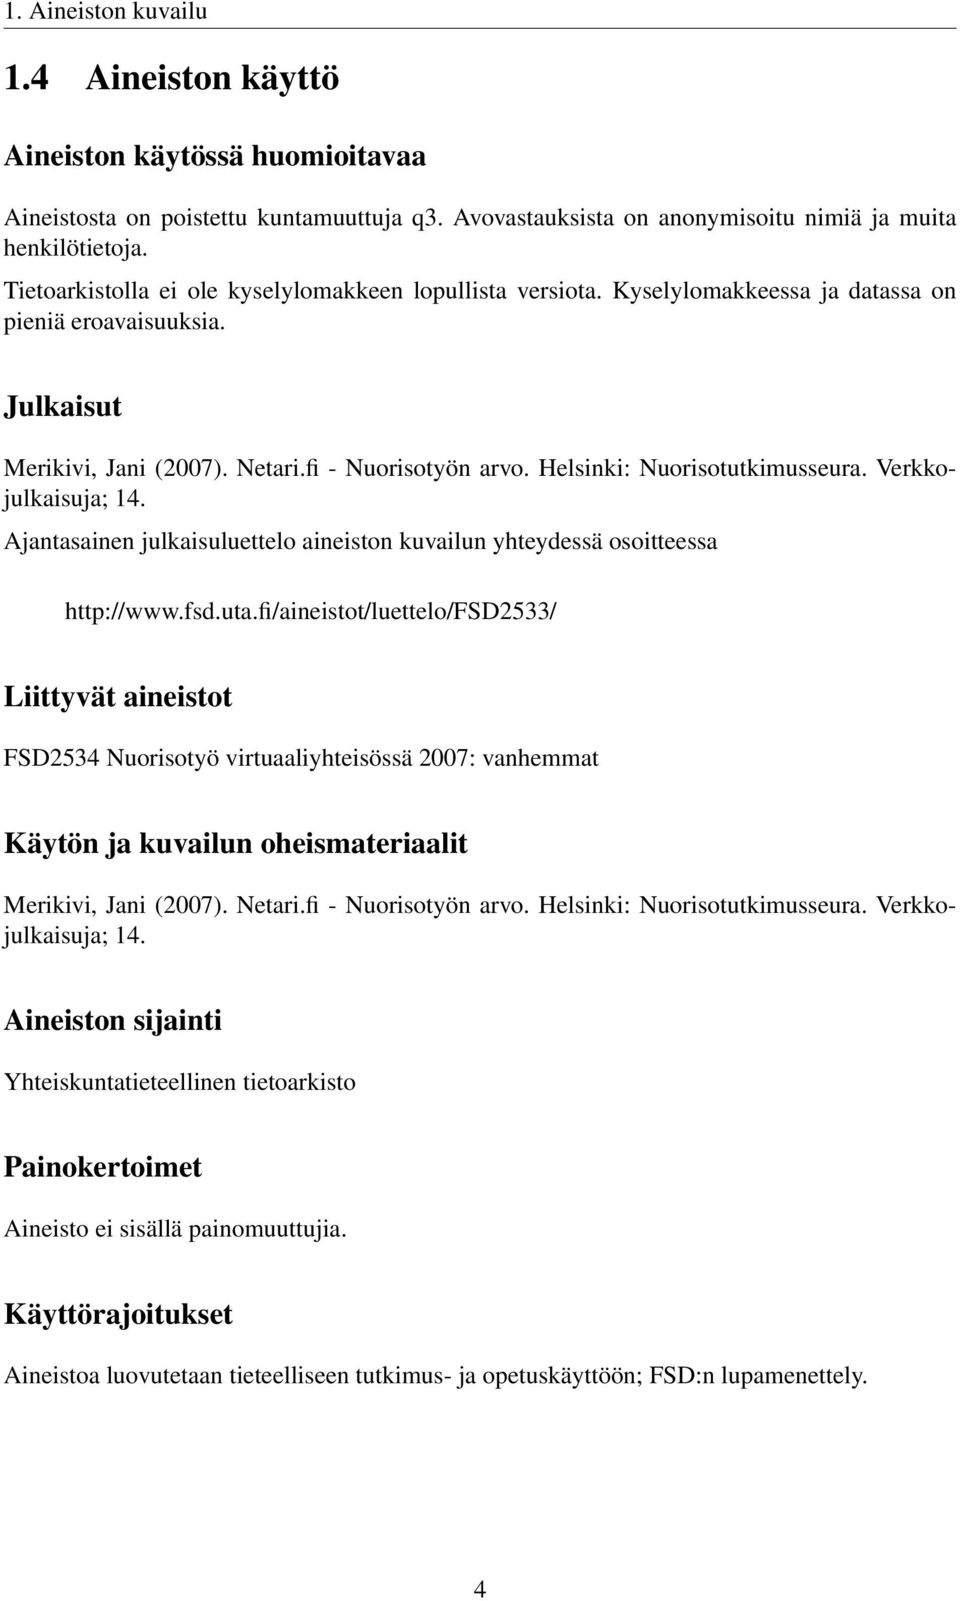 Helsinki: Nuorisotutkimusseura. Verkkojulkaisuja; 14. Ajantasainen julkaisuluettelo aineiston kuvailun yhteydessä osoitteessa http://www.fsd.uta.